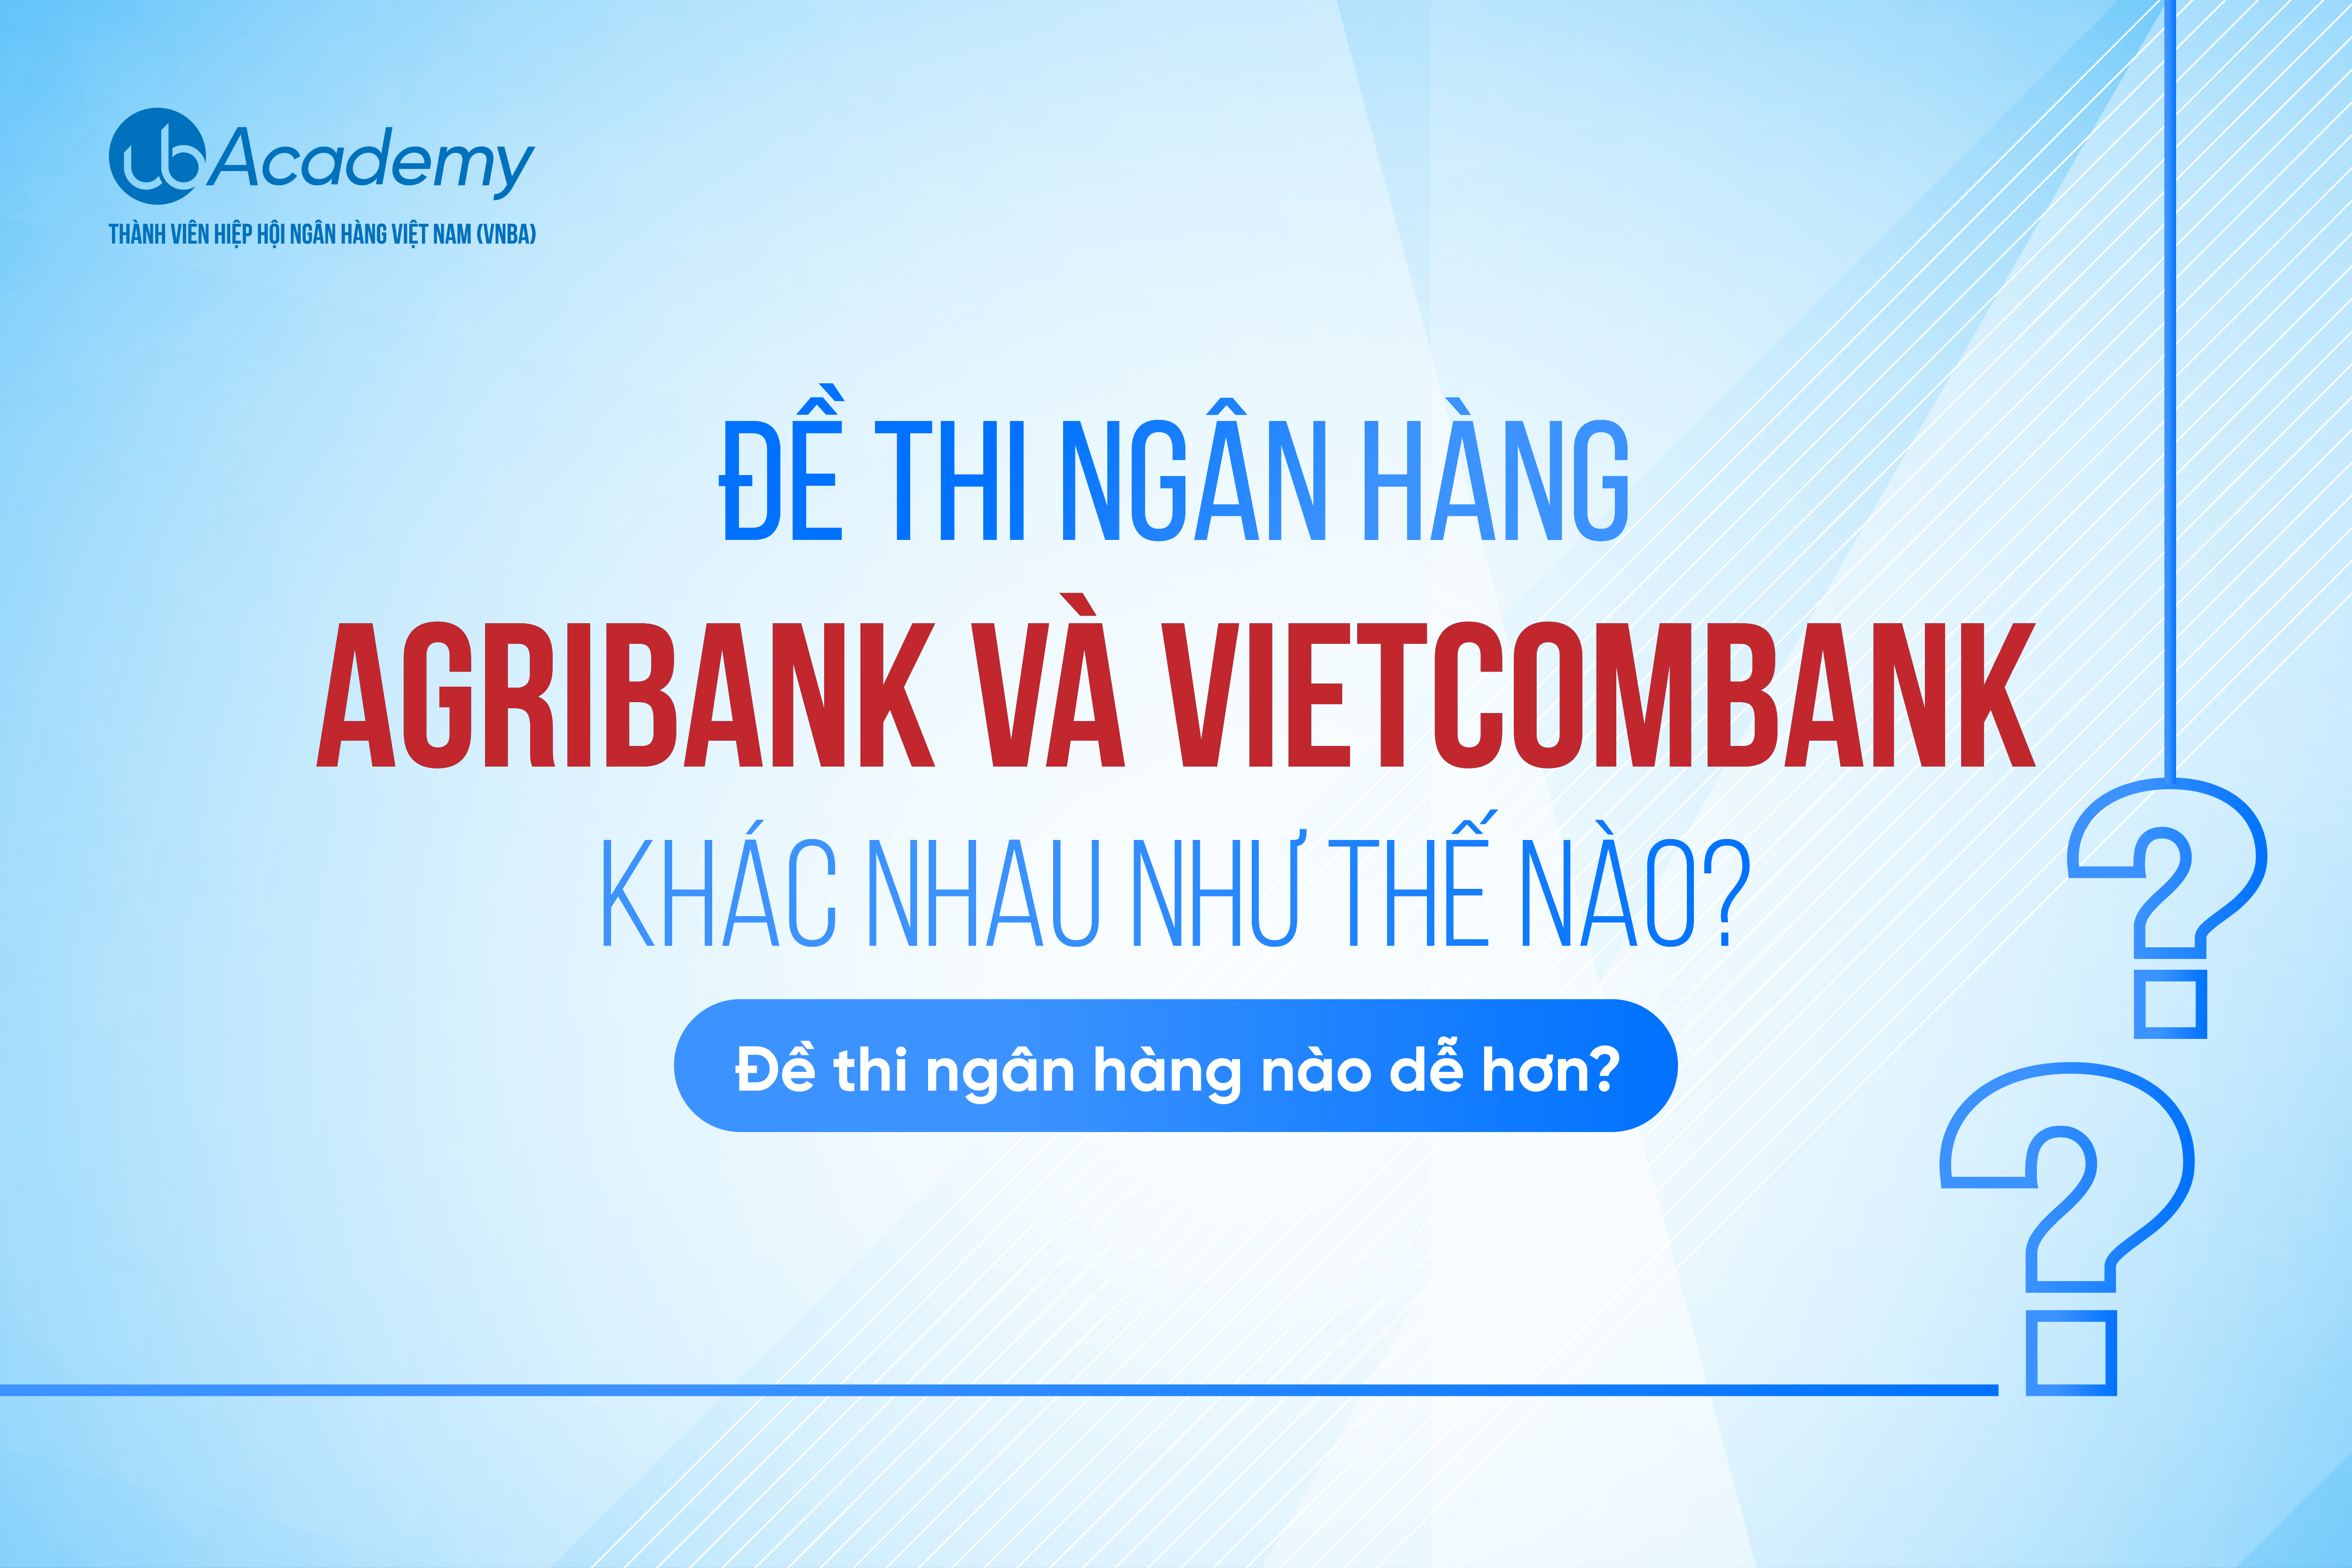 Đề thi ngân hàng Agribank và Vietcombank khác nhau như thế nào? Đề thi ngân hàng nào dễ hơn?